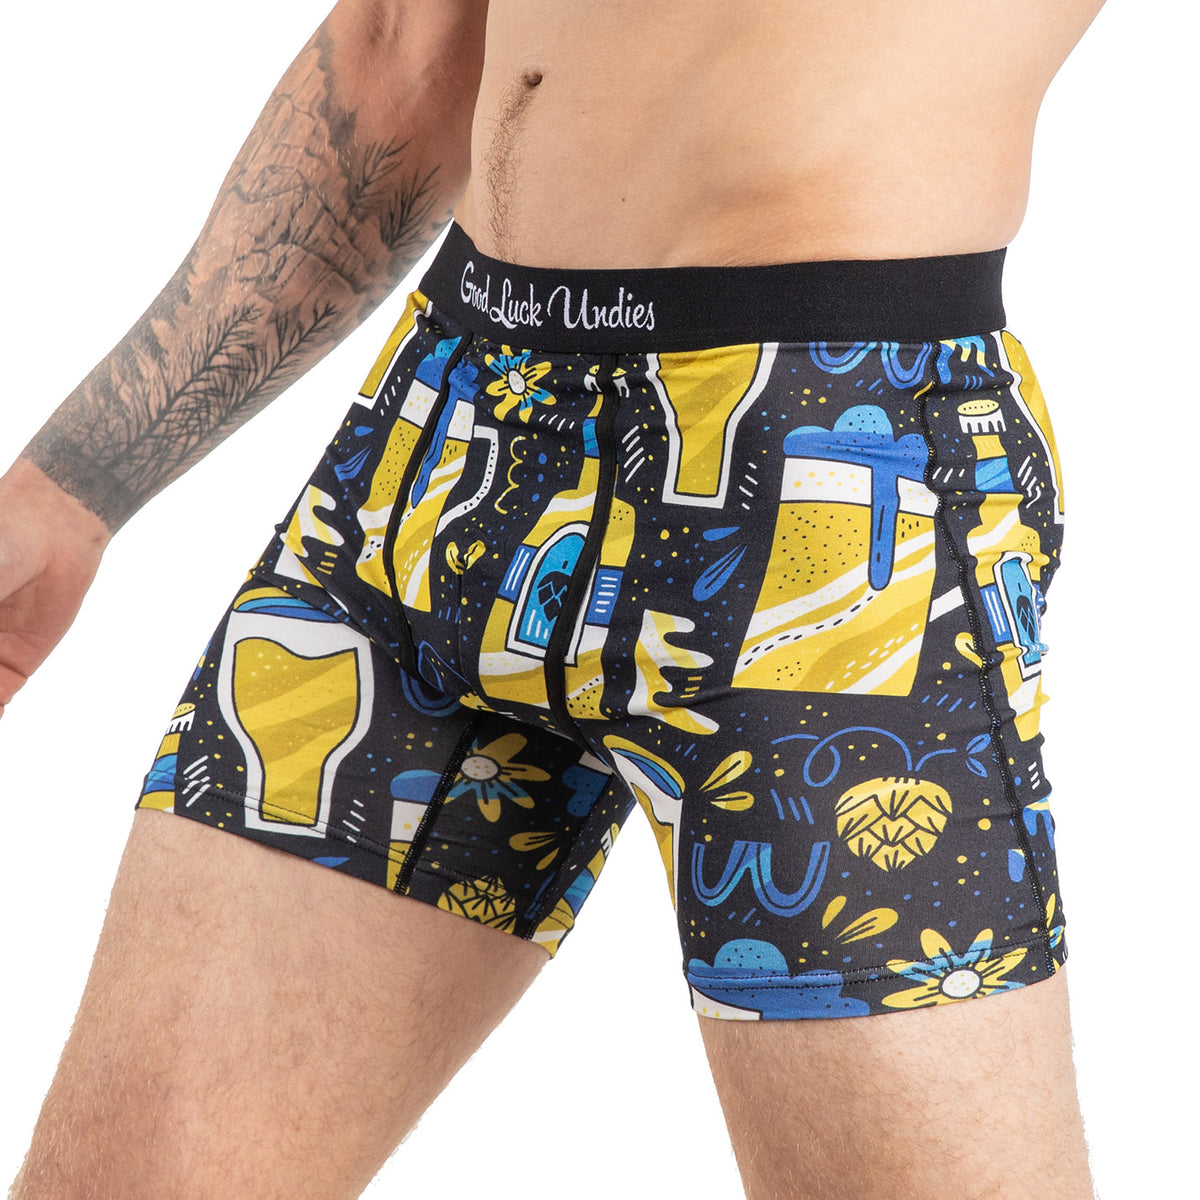 Men's Beer Underwear